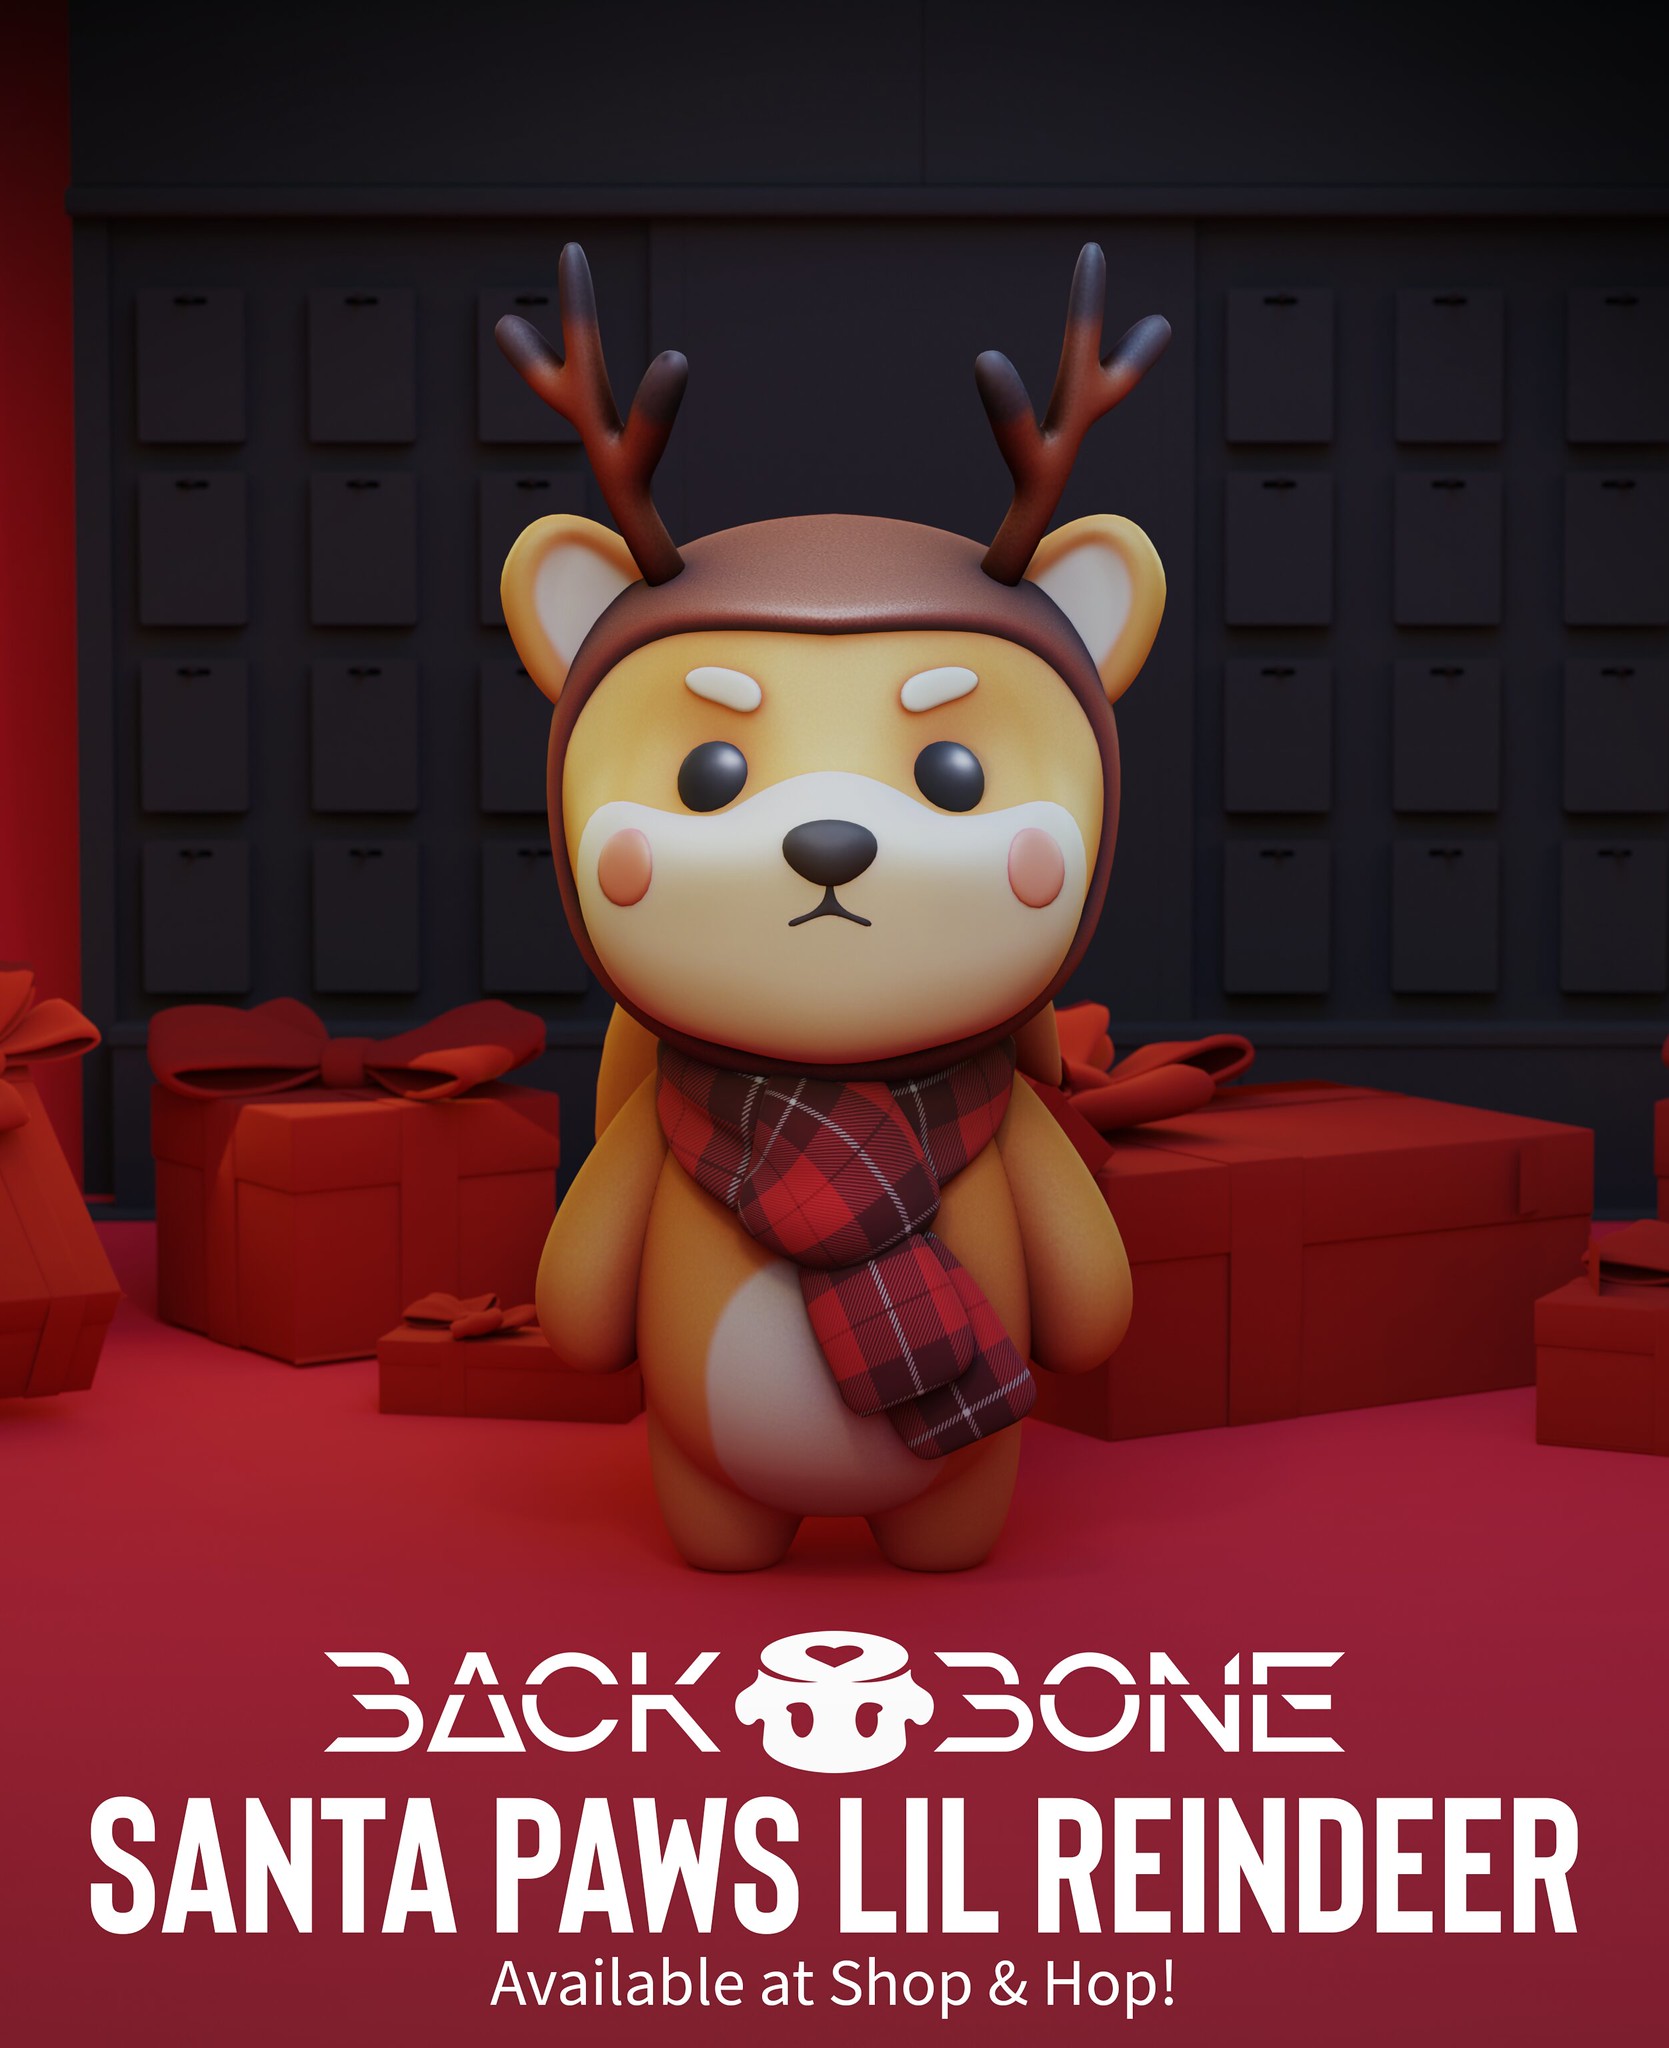 BackBone – Santa Paws Lil Reindeer